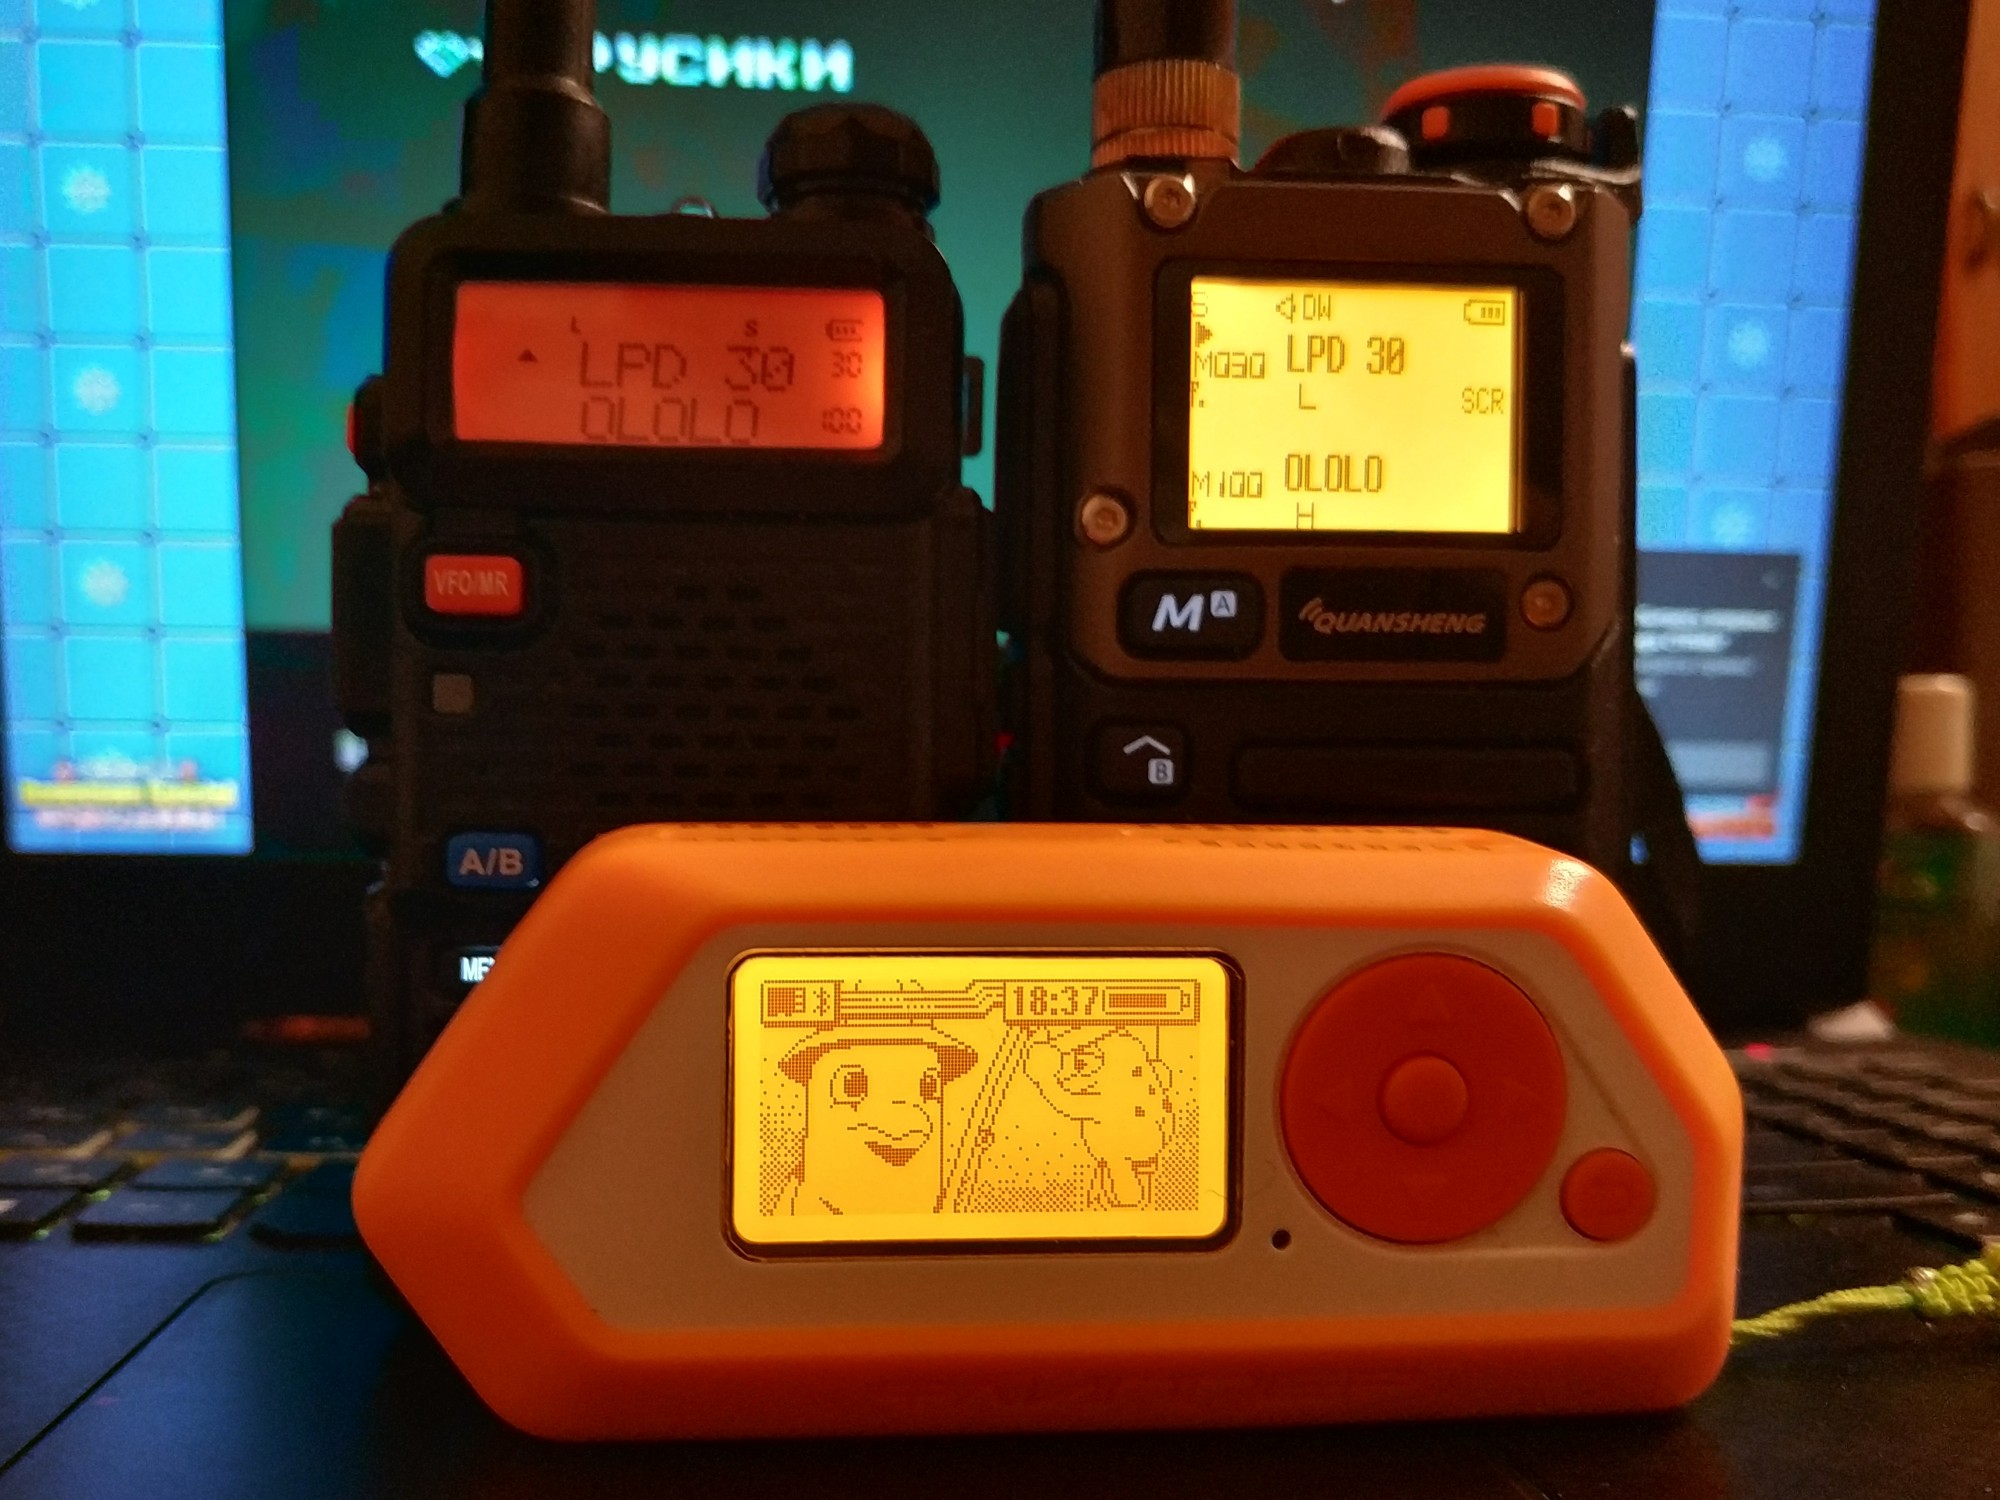 Сравнение подсветки UV-5R и UV-K5(8) 
Flipper Zero в качестве эталона.